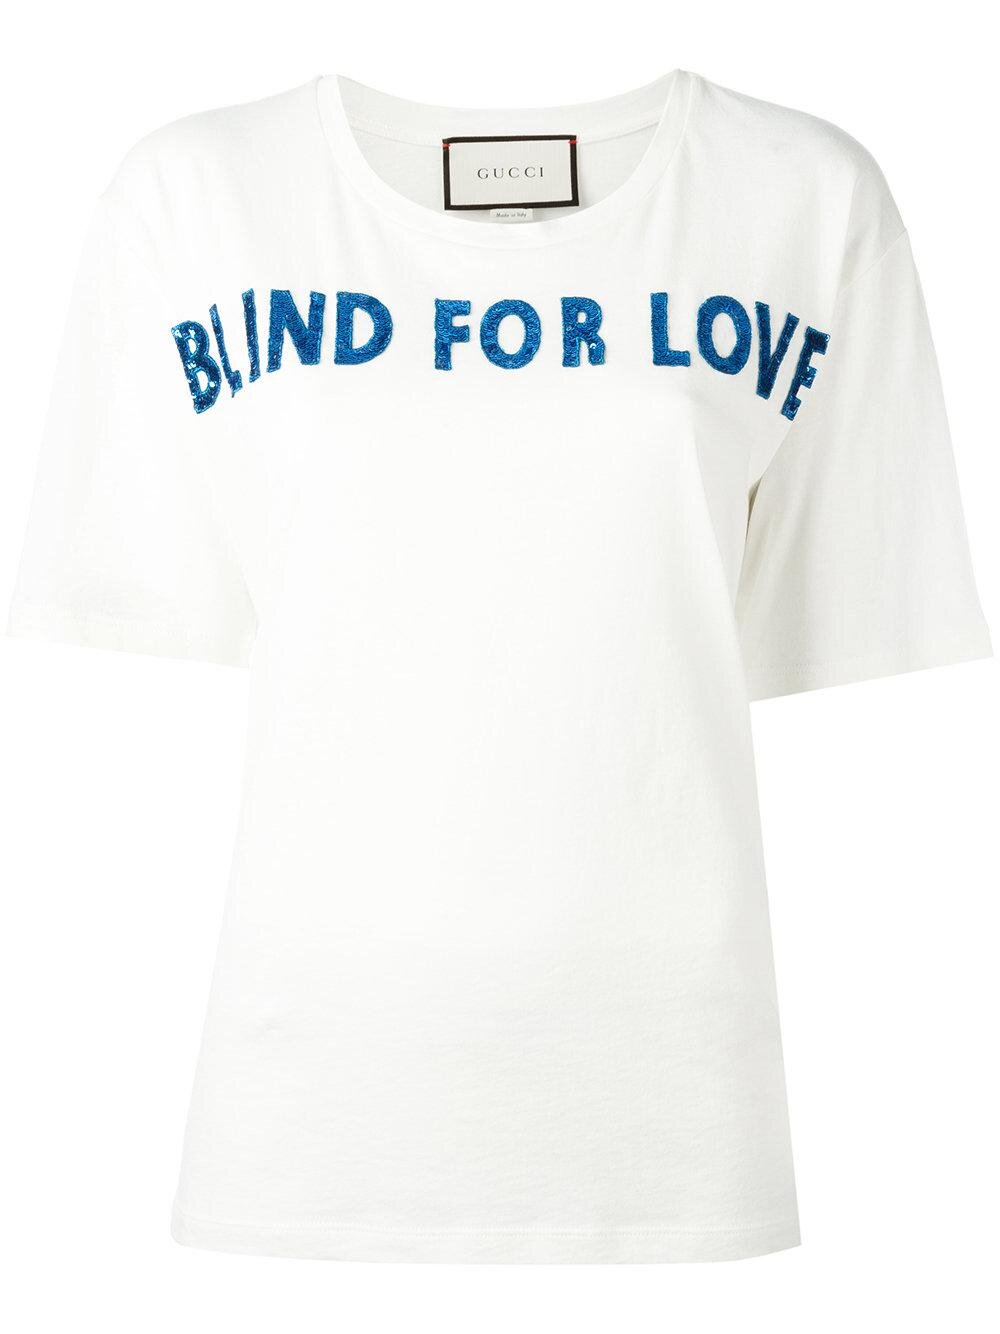 blind for love t shirt